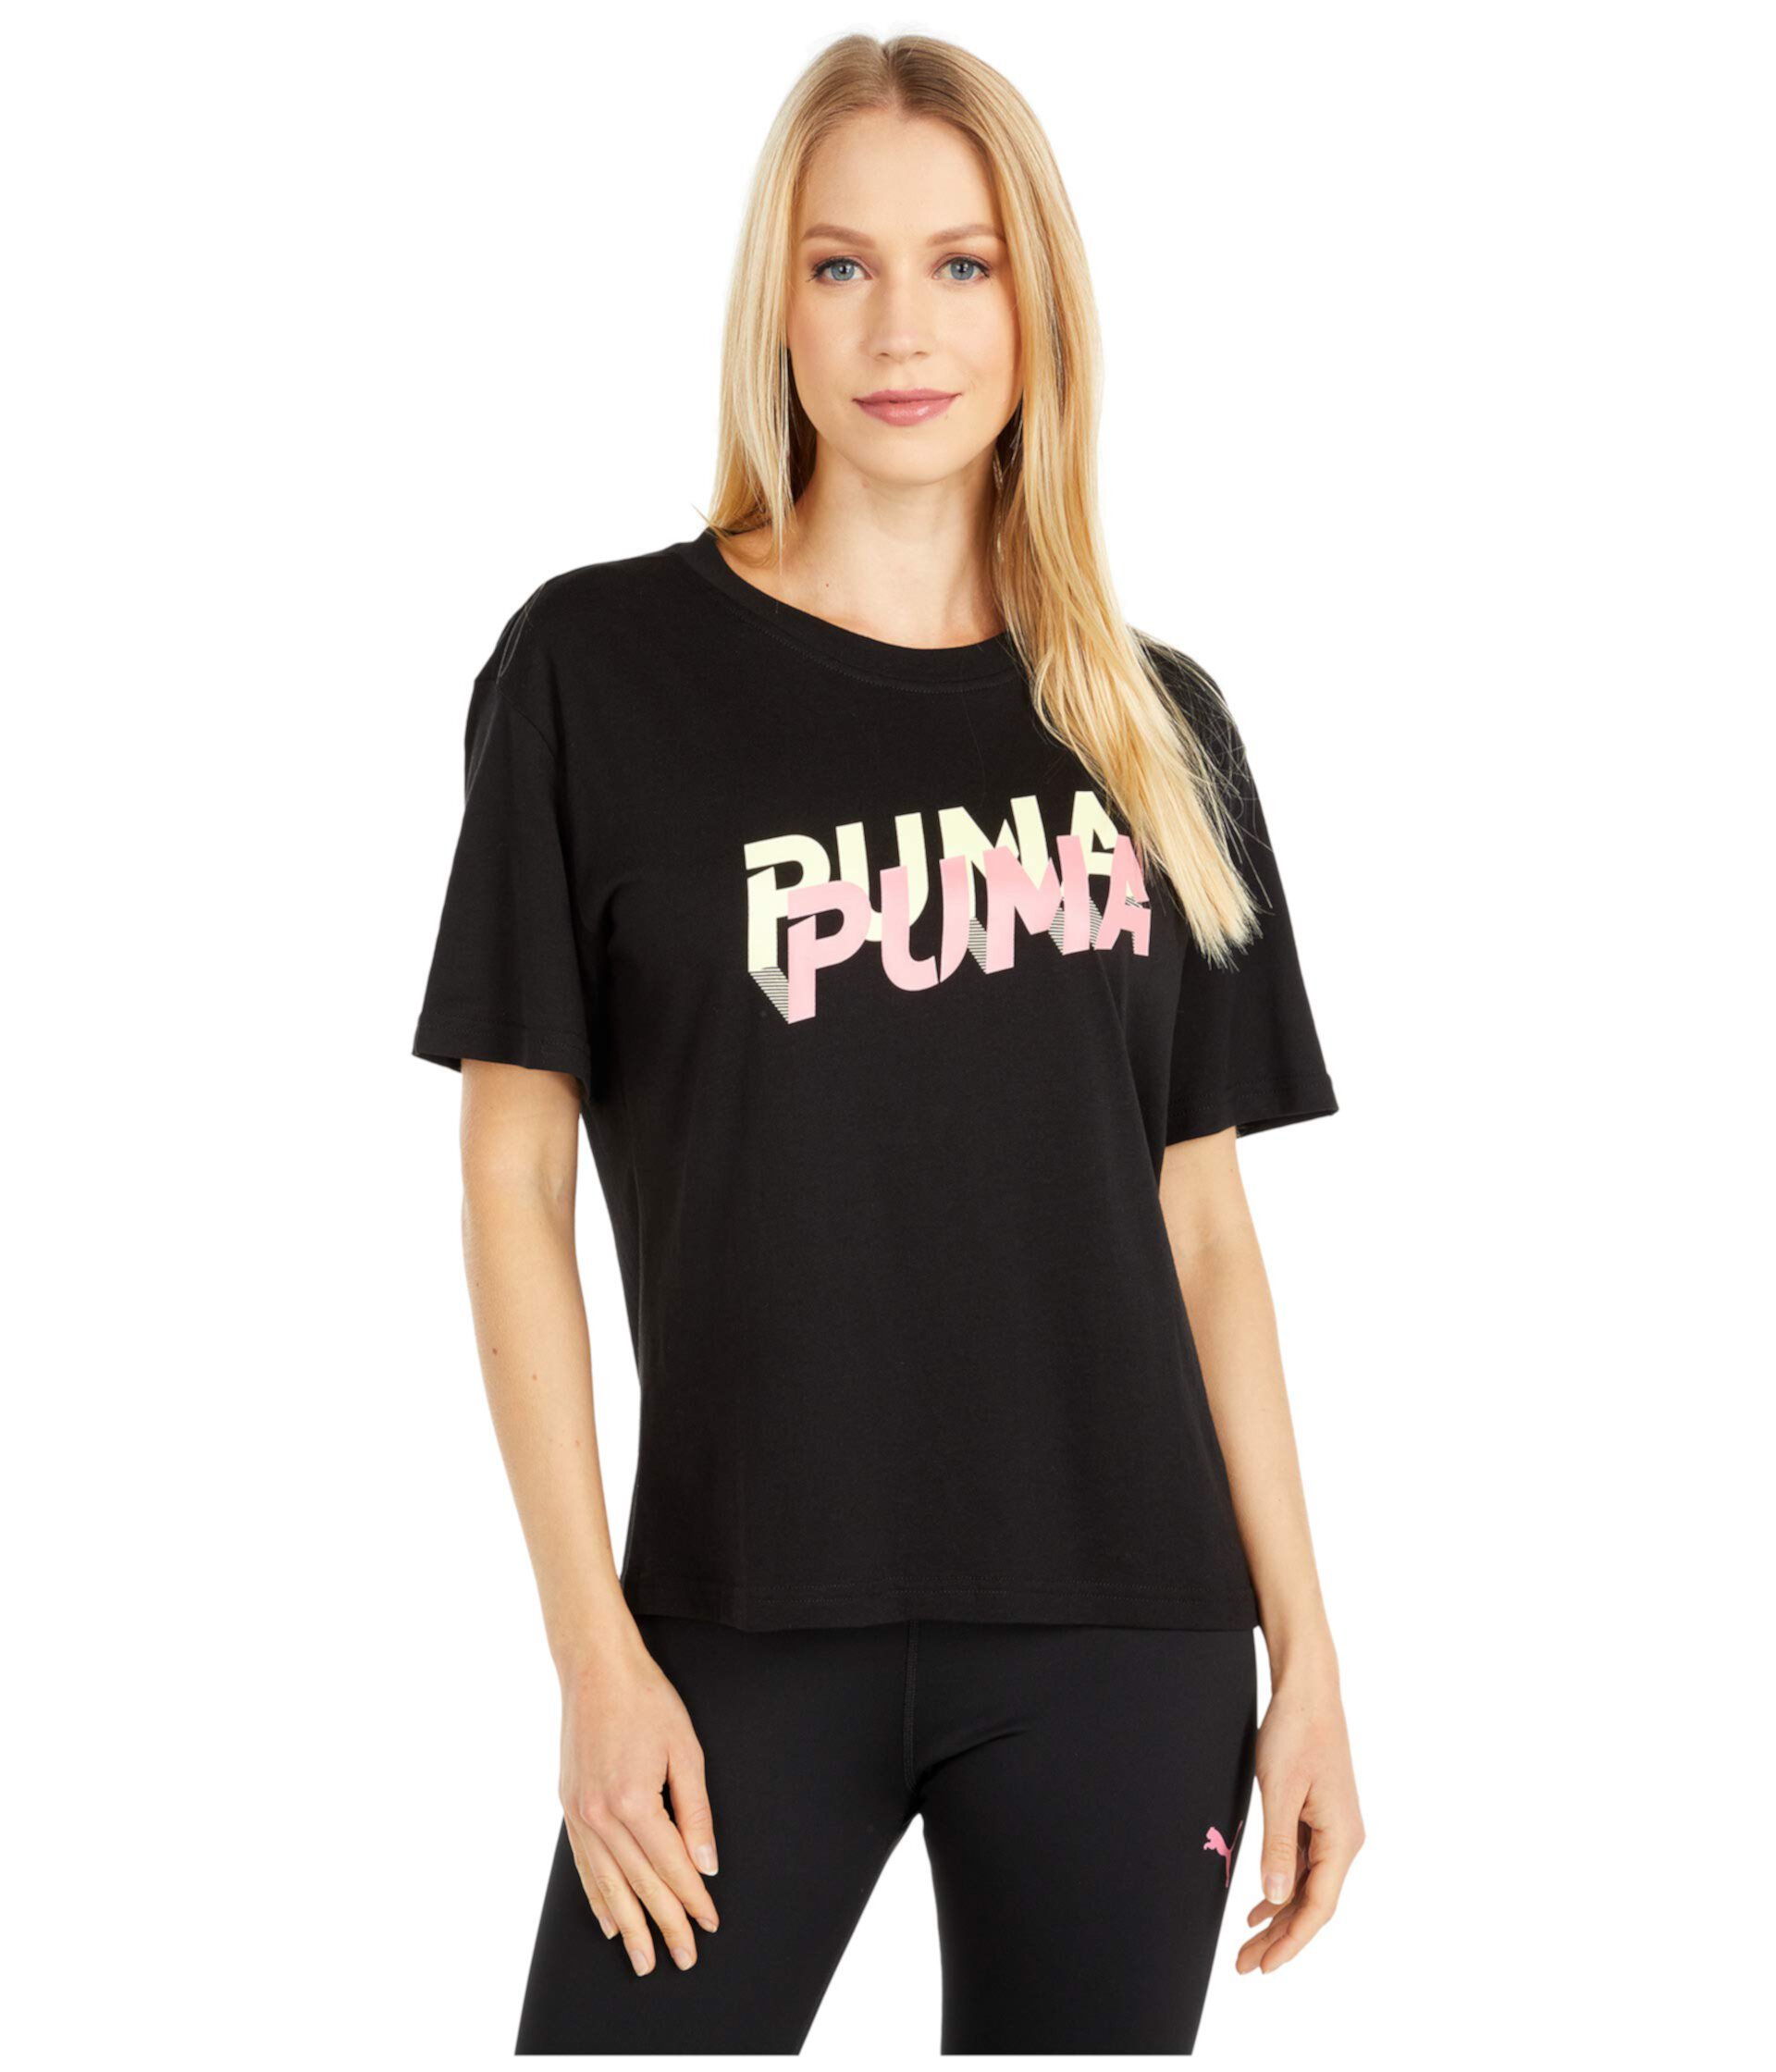 Современная спортивная футболка с логотипом PUMA